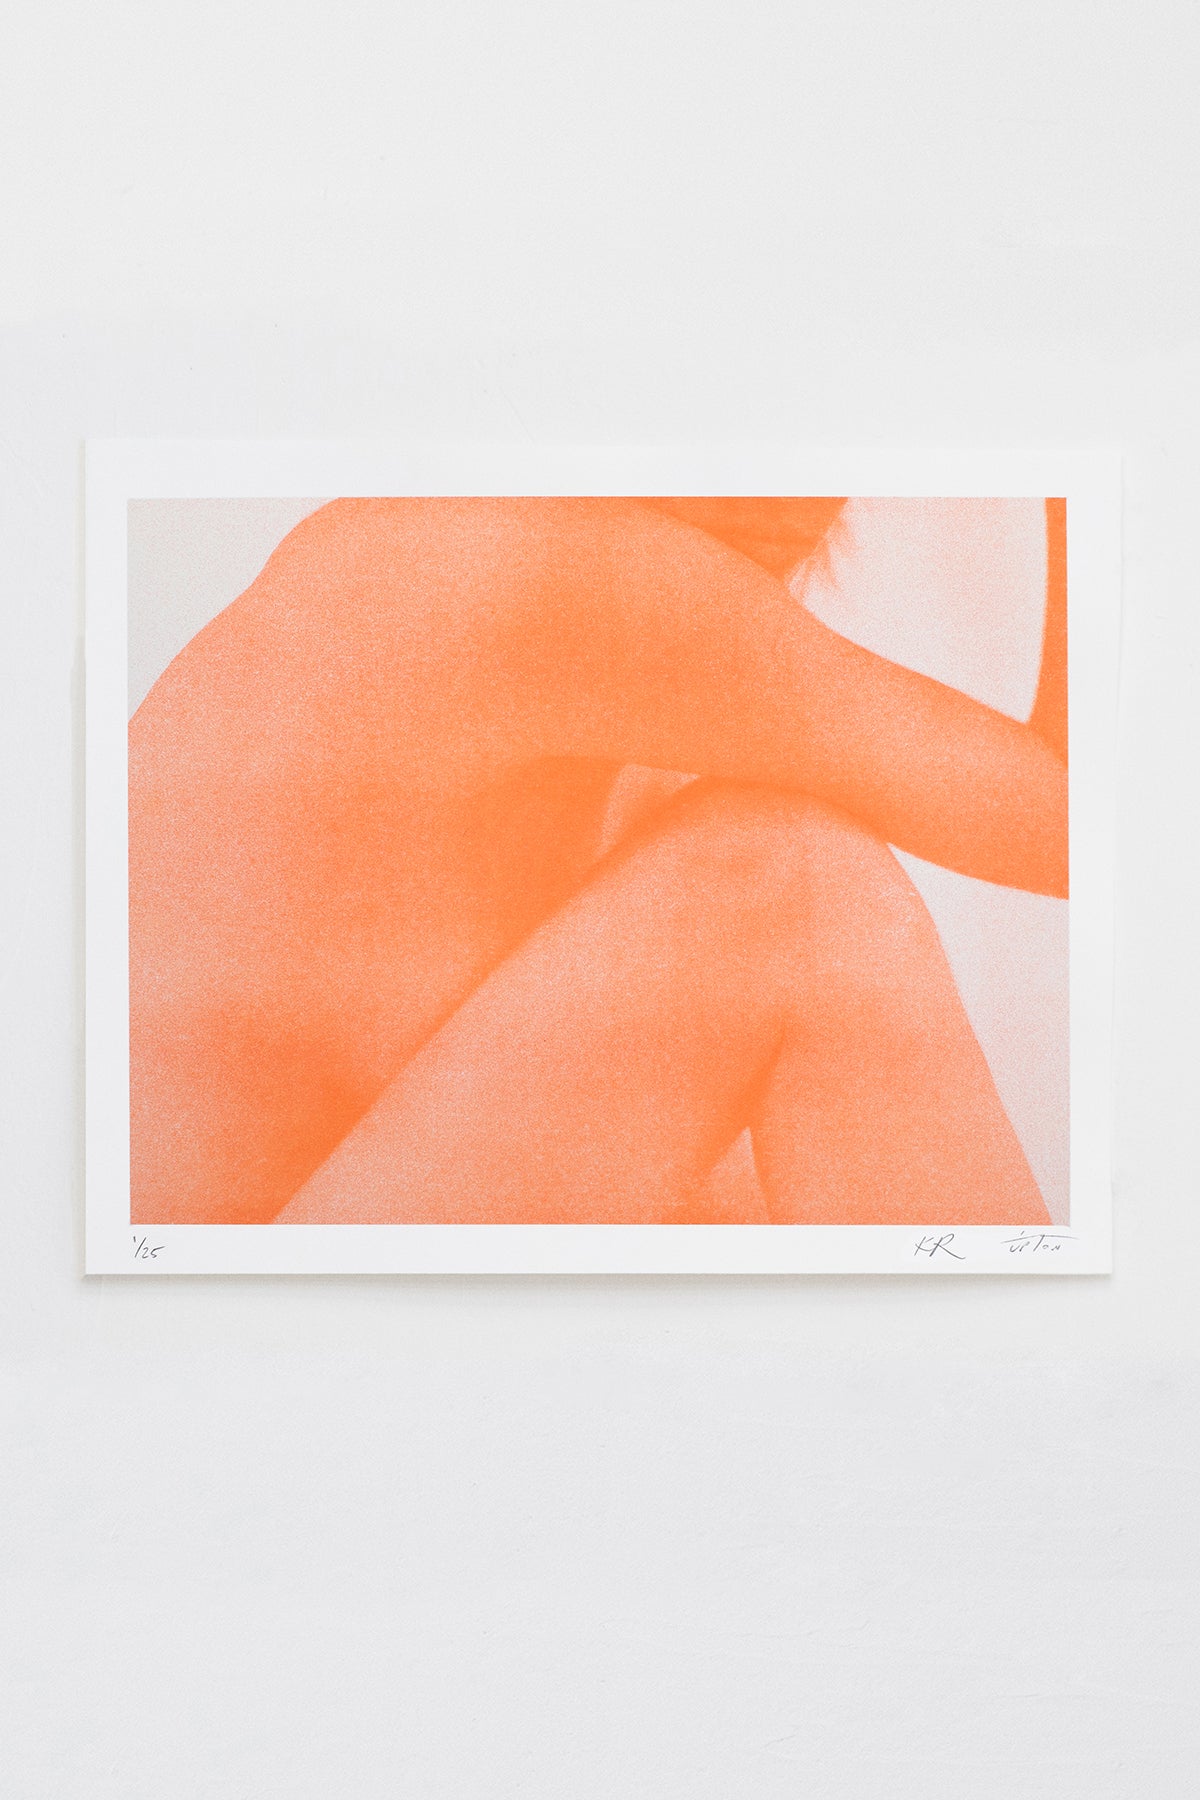 CERES - Orange | Paper14" x 11"